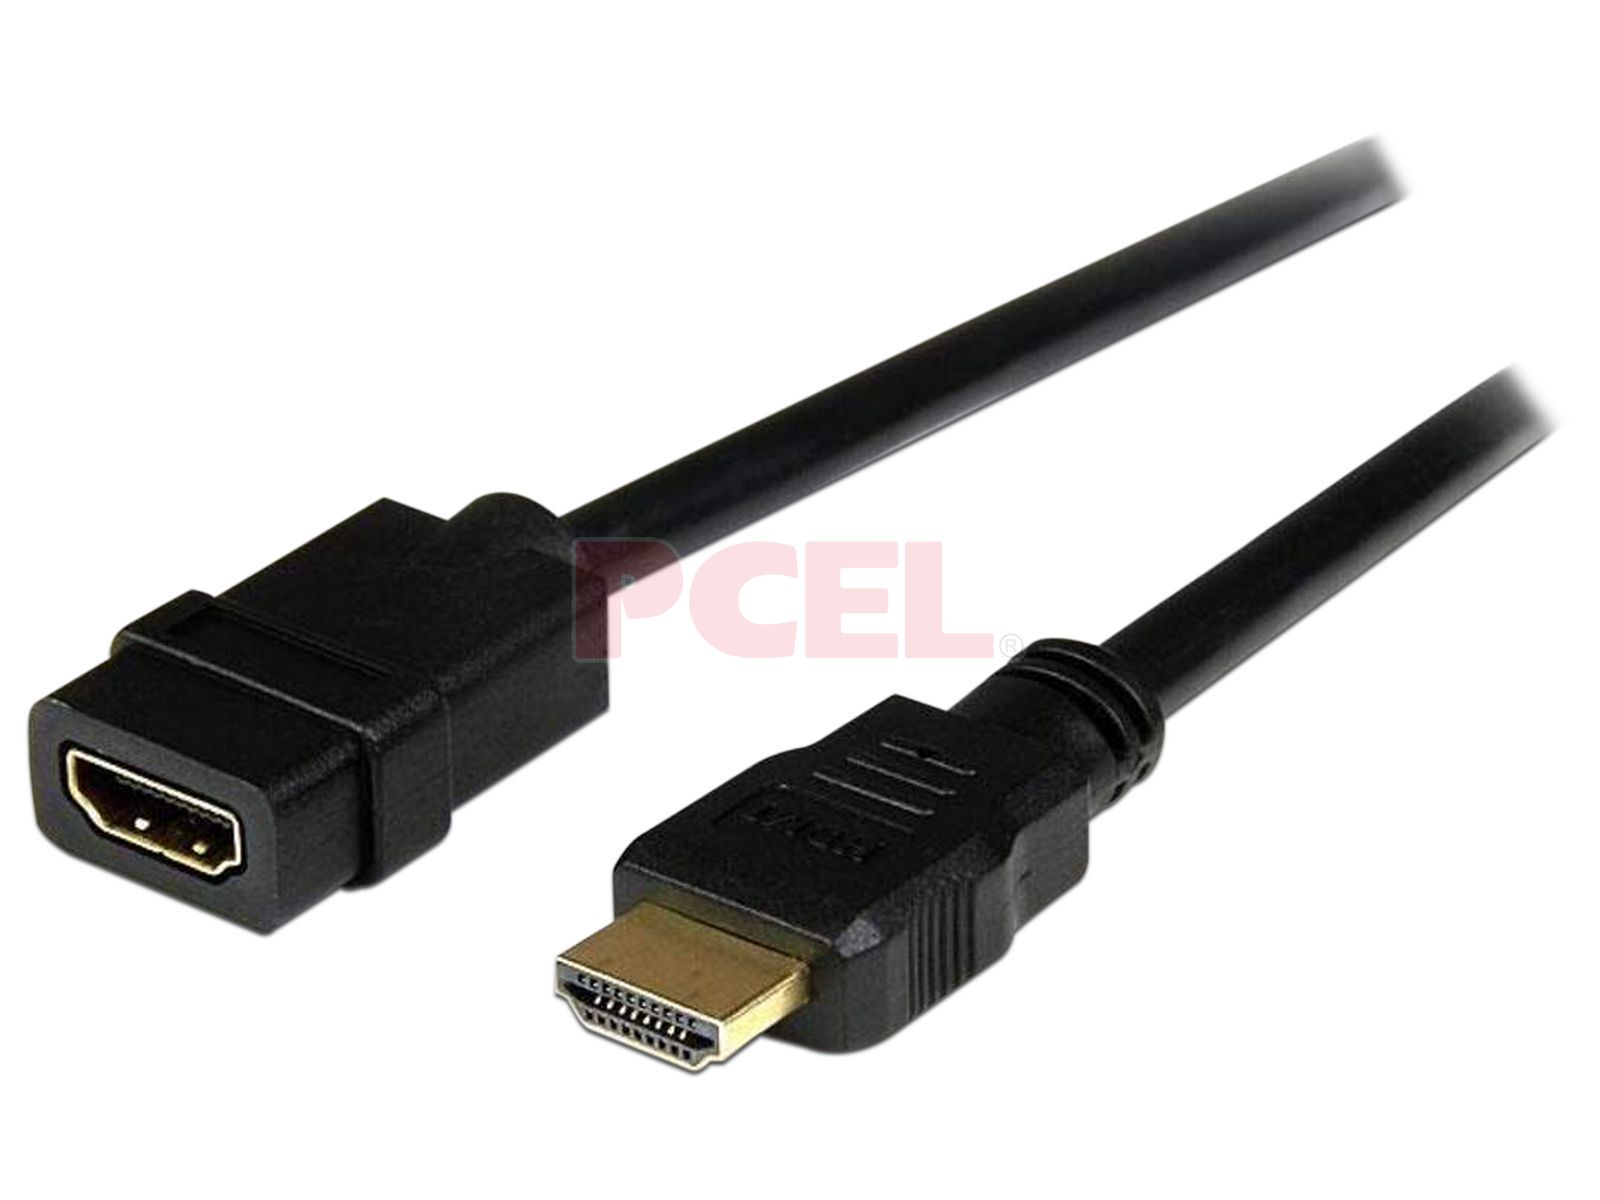 Cable de extensión HDMI para Streaming Stick, adaptador HDMI corto macho a  hembra, conector extensor HDMI 4K 3D, paquete de 2